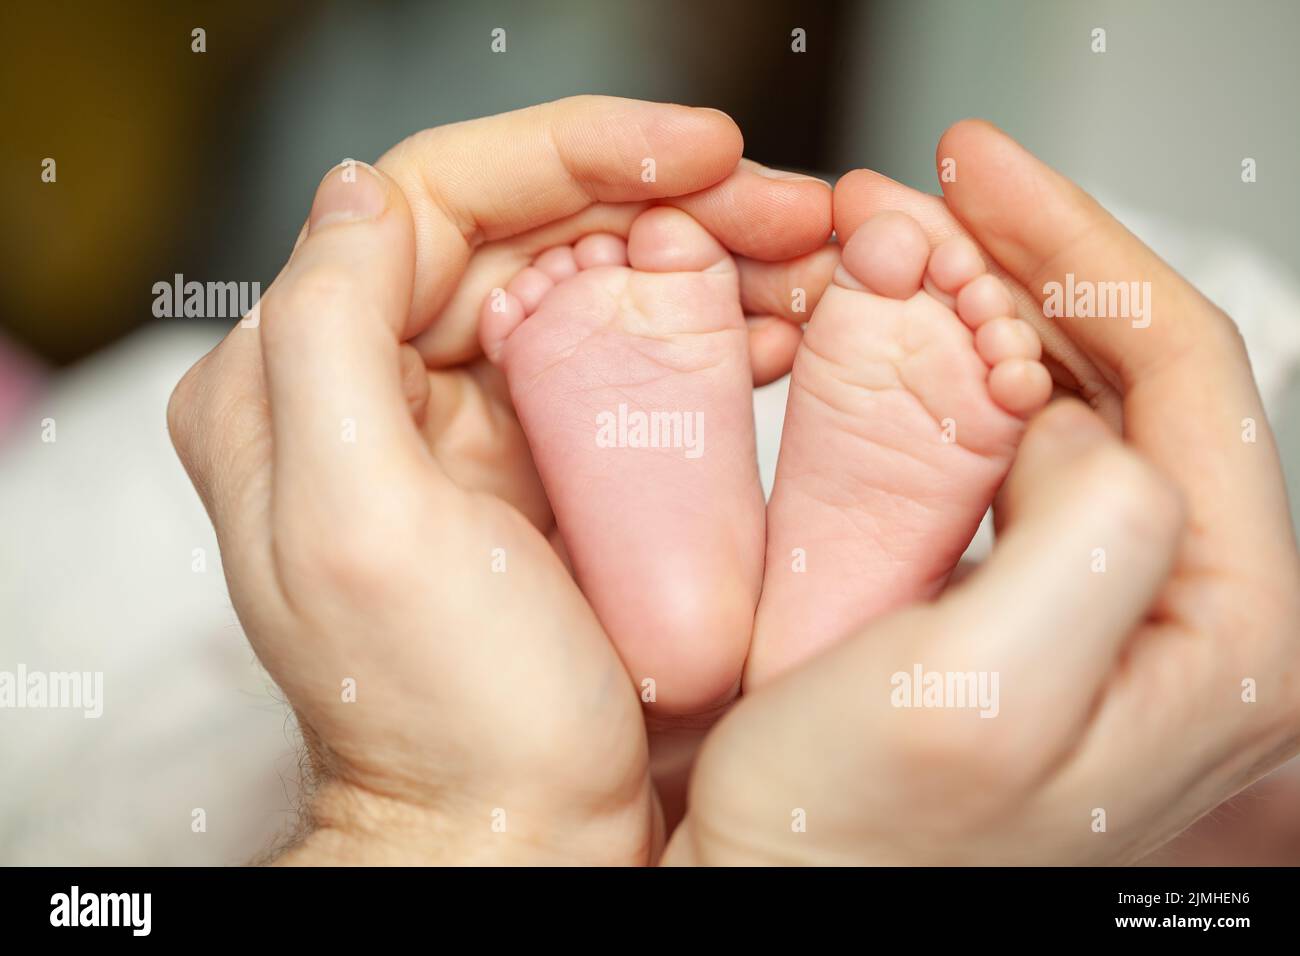 Las manos de papá tocan las piernas de su adorable hija recién nacida Foto de stock